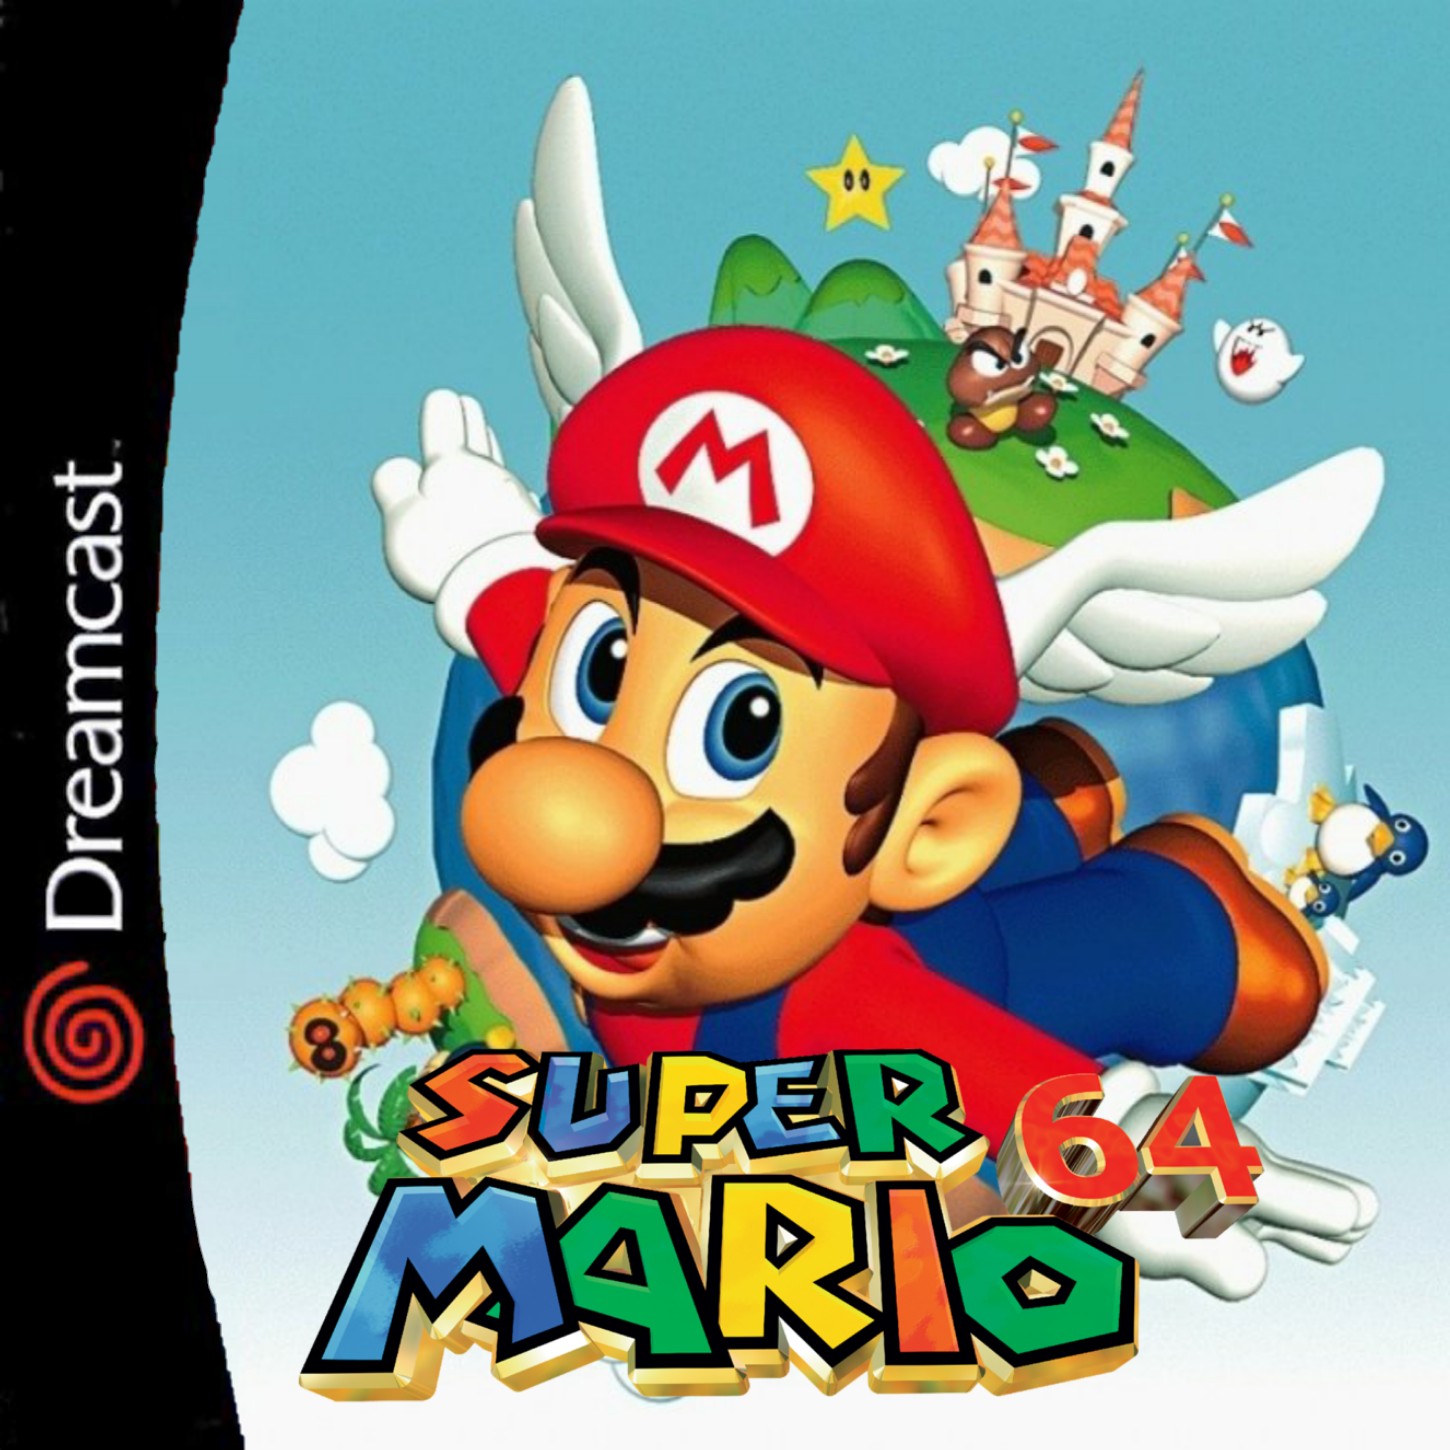 super mario 64 online full game